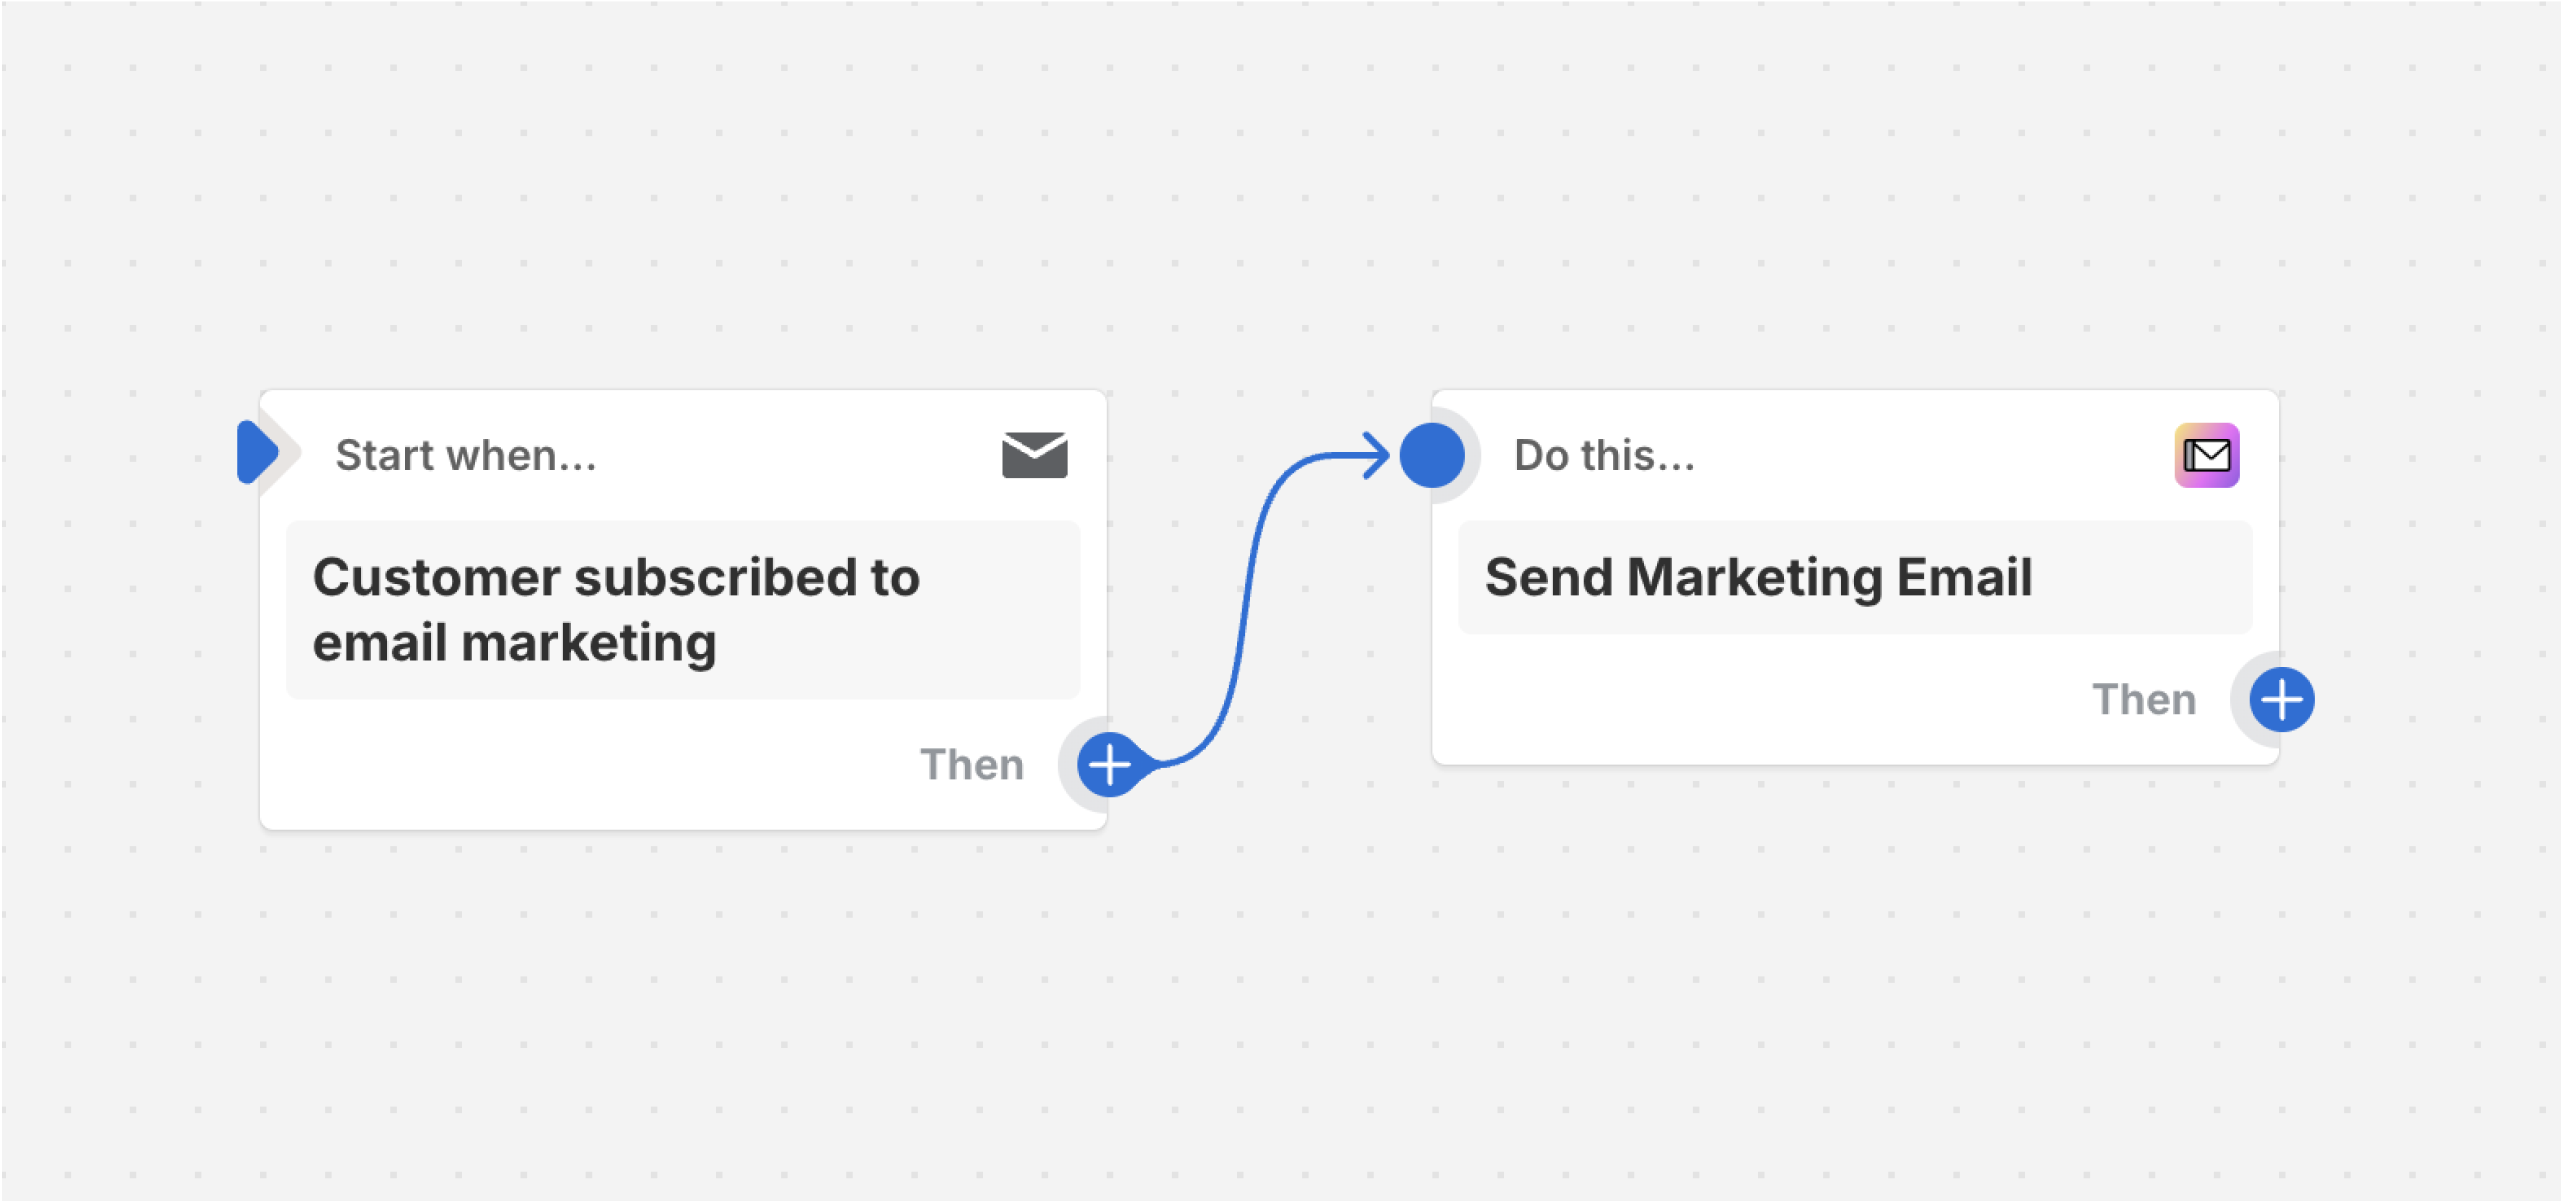 Eksempel på en arbeidsflyt som sender en e-postmelding for markedsføring etter at en kunde abonnerer på e-postmarkedsføring